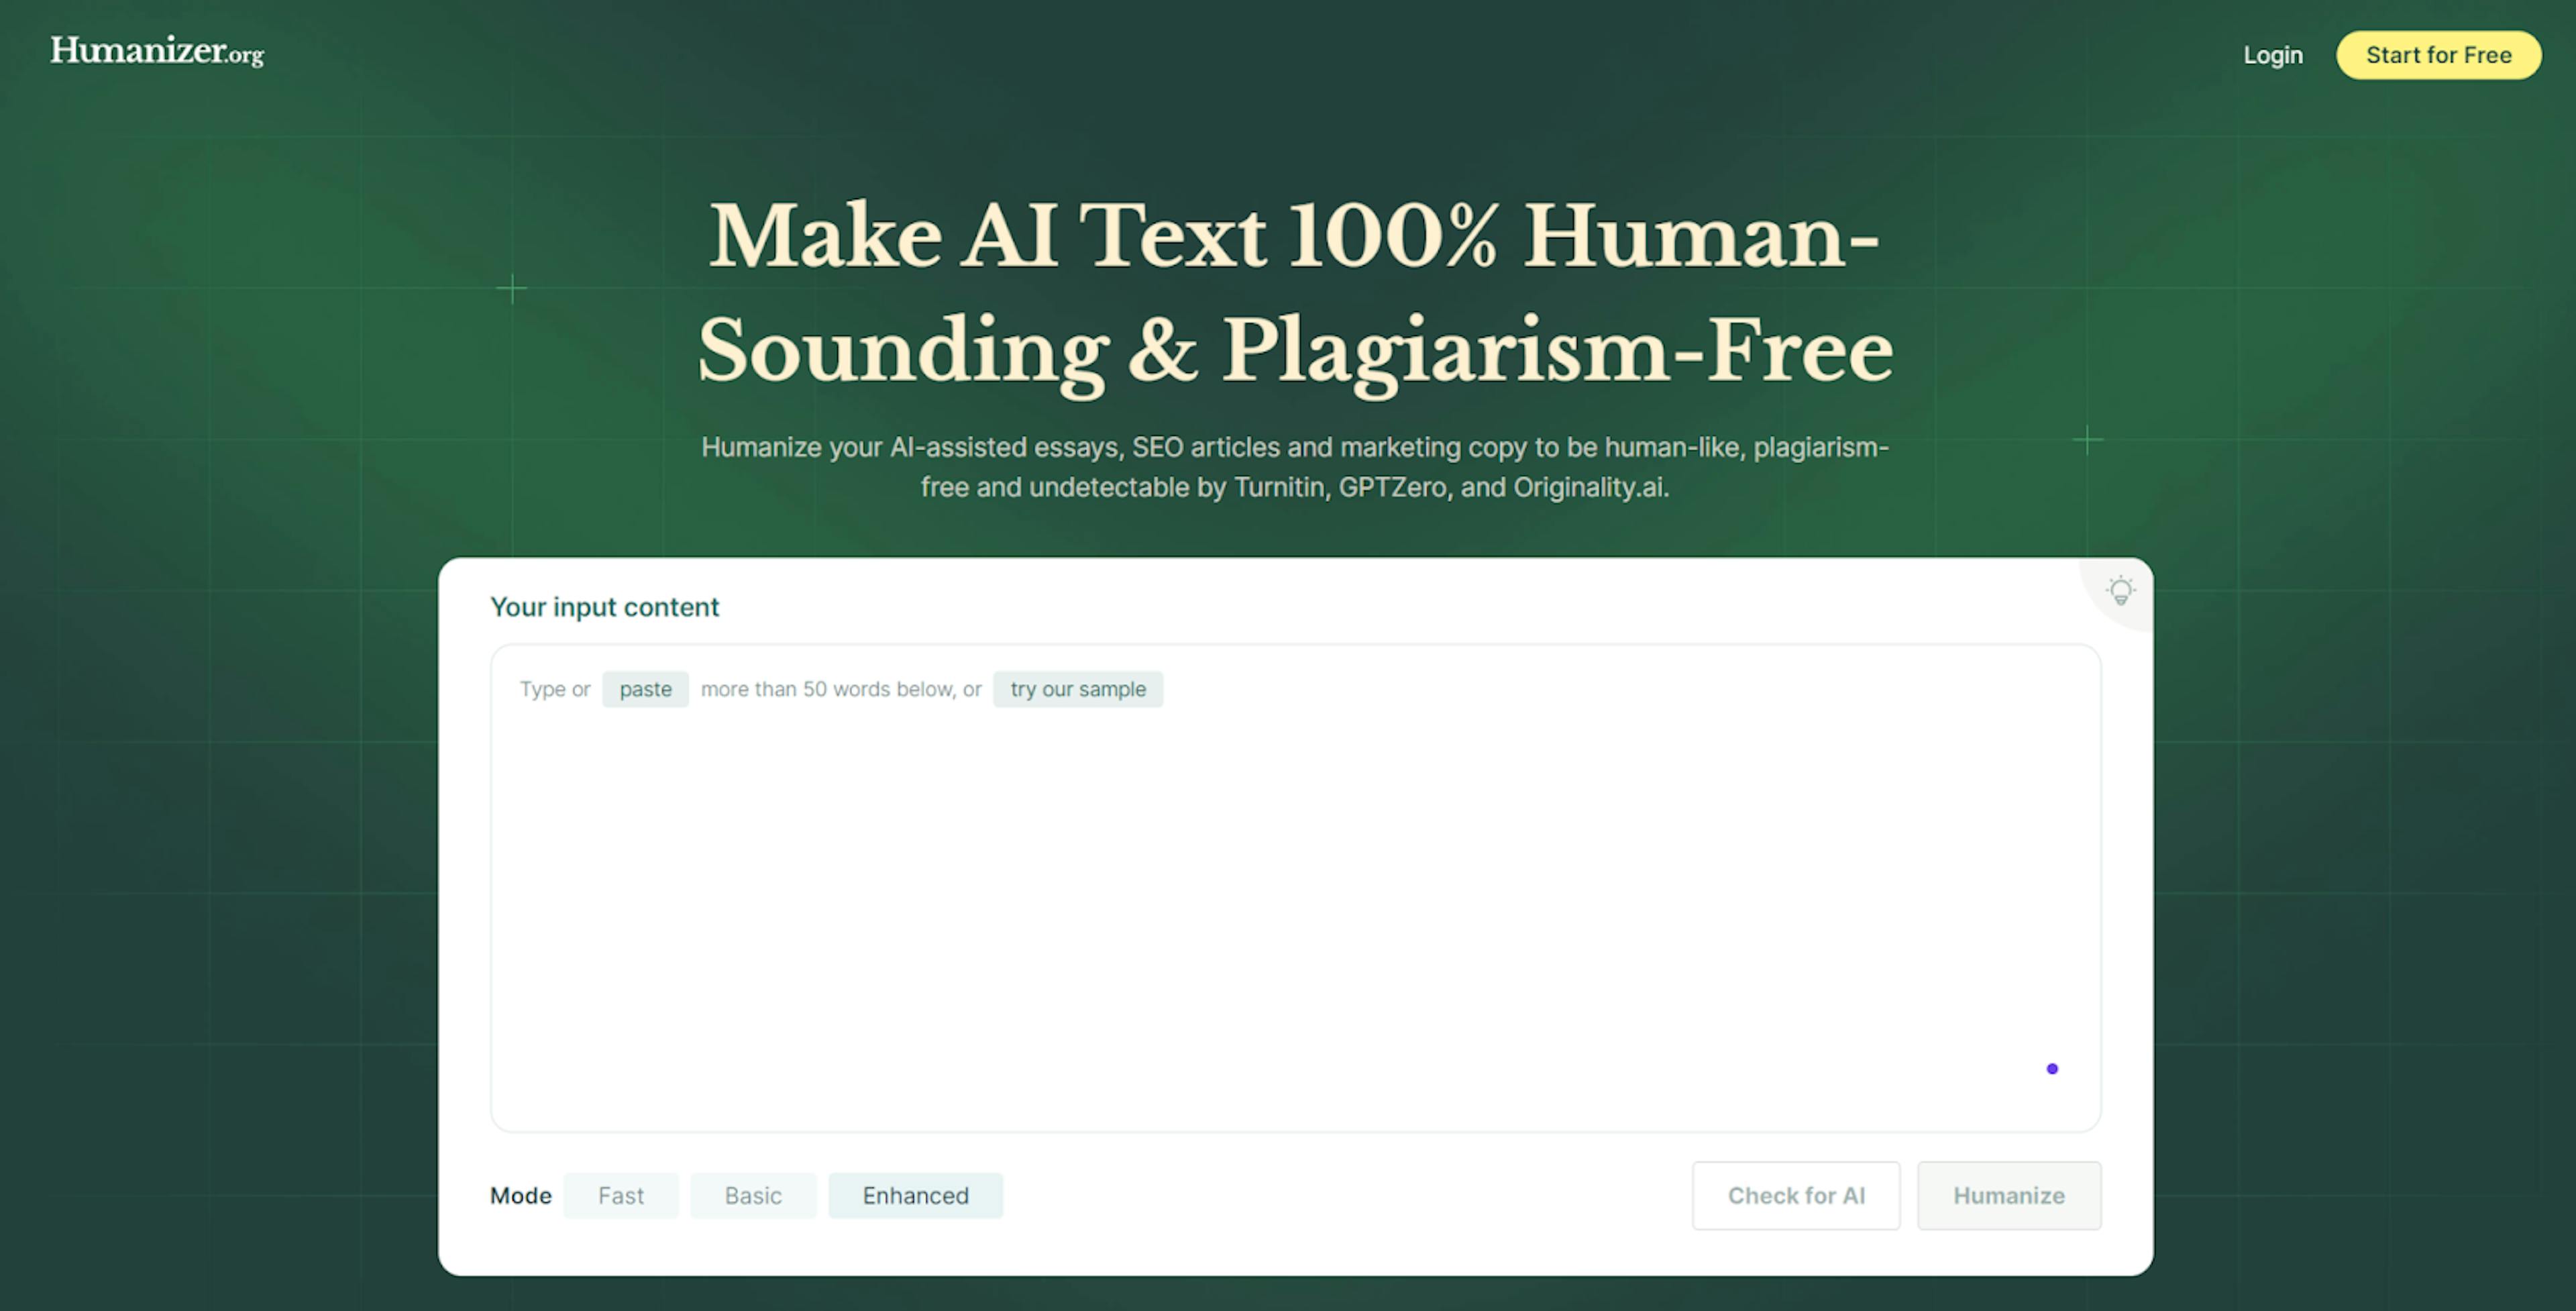 featured image - Đánh giá Humanizer.org: Làm cho nội dung AI không thể bị phát hiện miễn phí